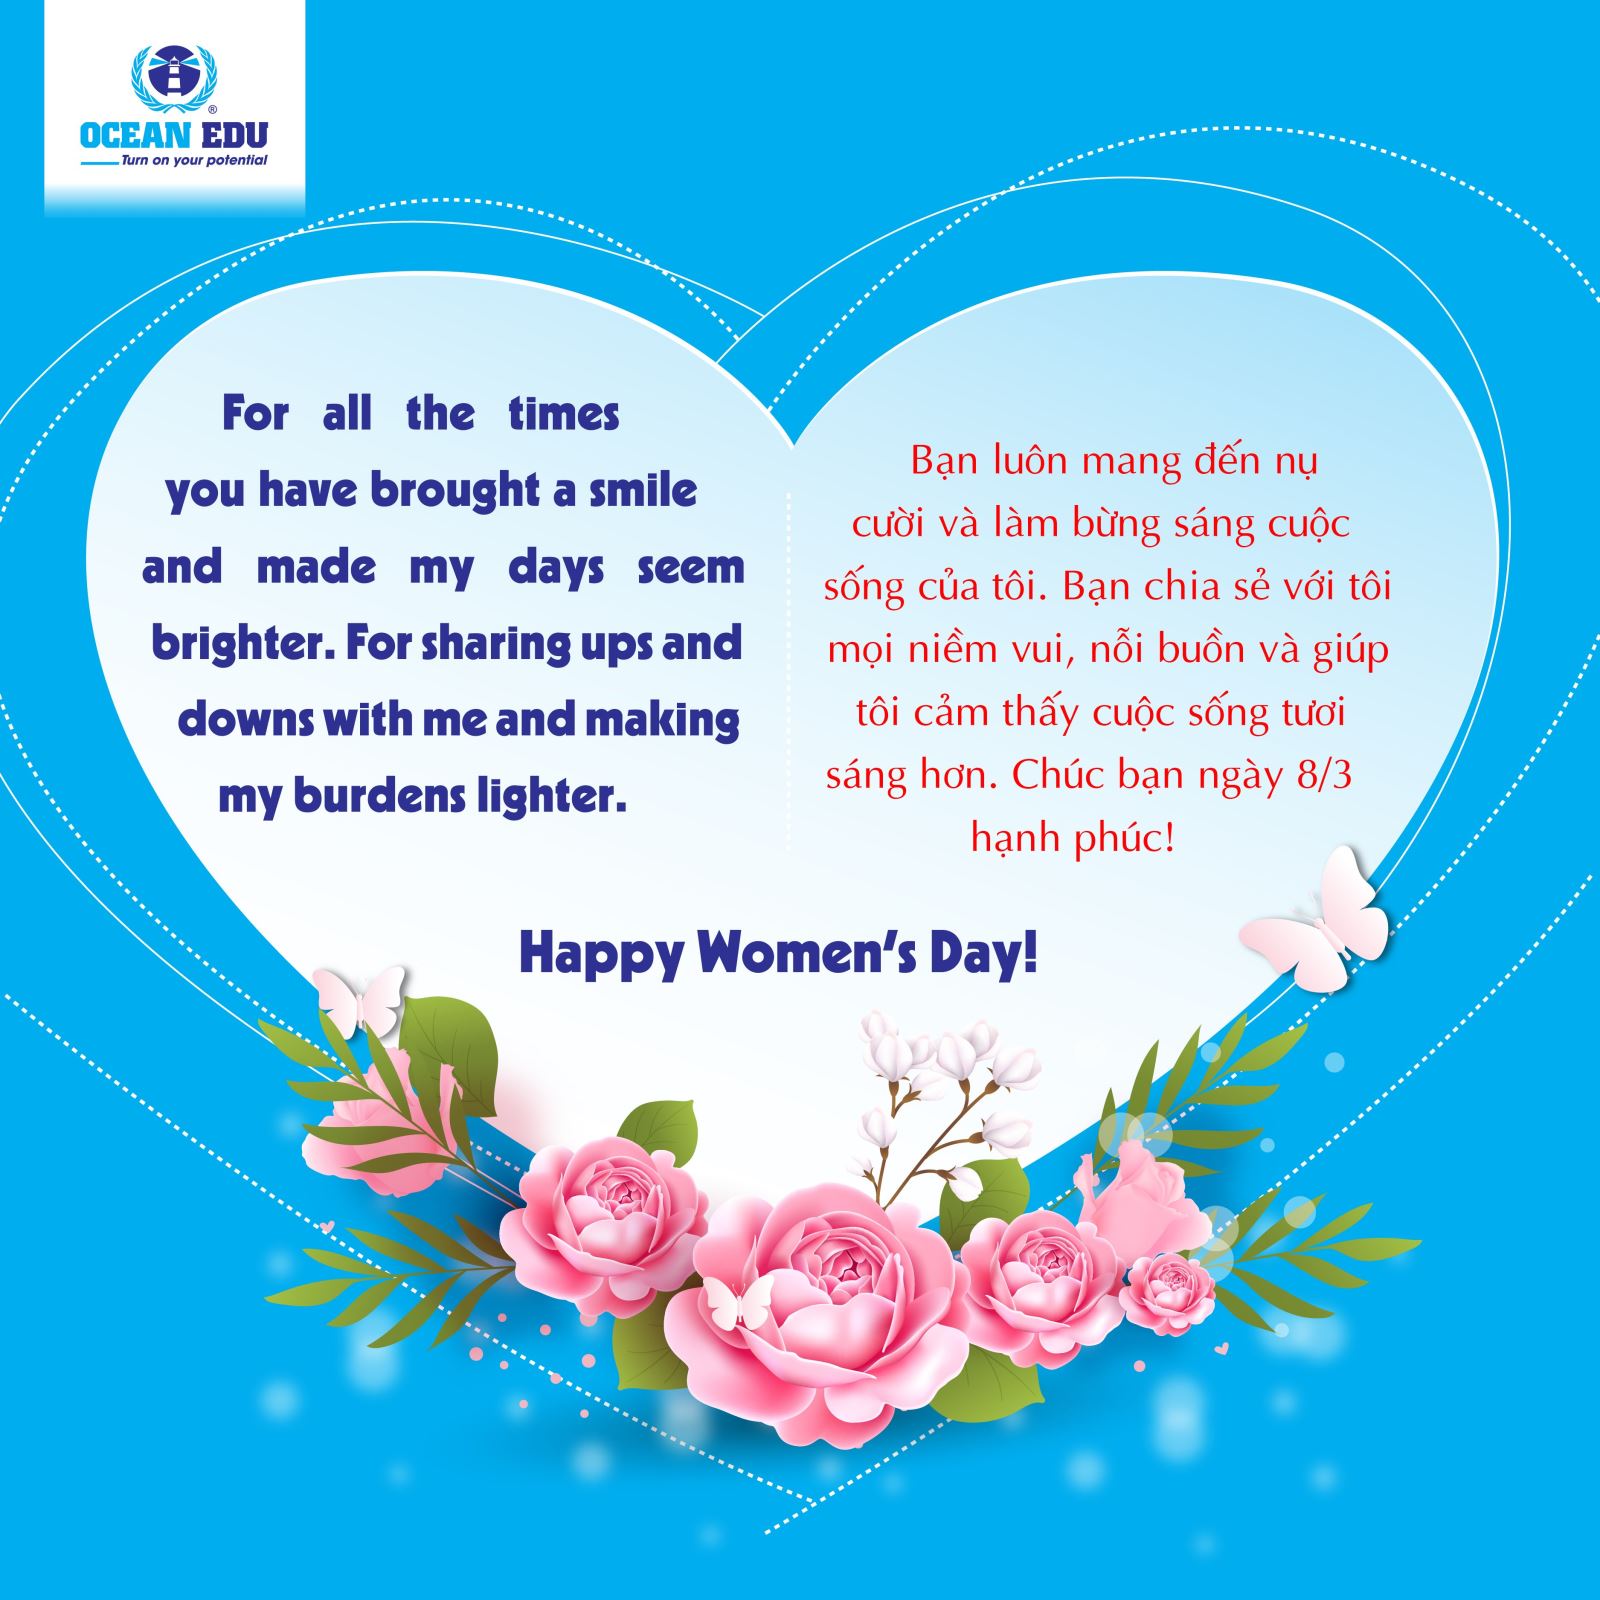 Ngày Quốc tế Phụ nữ - một ngày lễ đầy ý nghĩa để tôn vinh và cảm ơn các bà, các mẹ, các chị em phụ nữ vì những đóng góp vô giá của mình. Để tưởng nhớ và chia sẻ niềm vui, hãy cùng nhau tạo nên những khoảnh khắc ý nghĩa với những lời chúc tốt đẹp và những món quà ý nghĩa nhất.